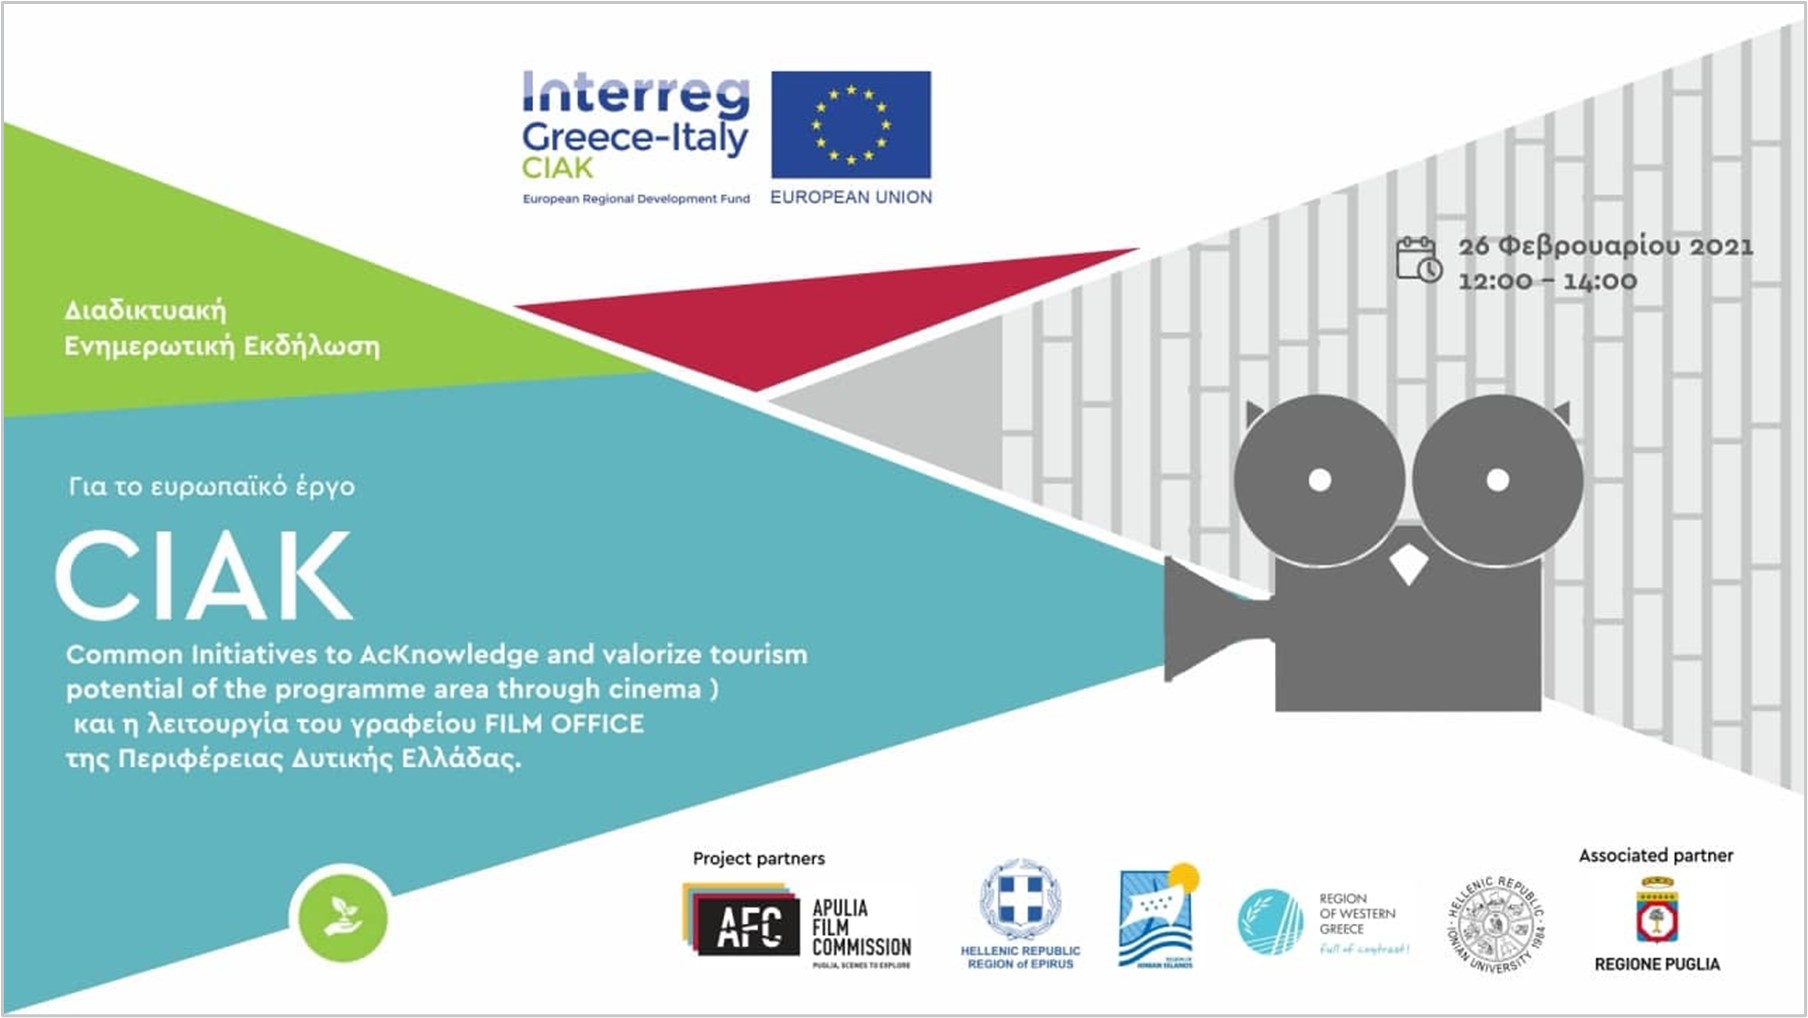 Διαδικτυακή ενημερωτική εκδήλωση για την ολοκλήρωση του Ευρωπαϊκού έργου Interreg CIAK και τη λειτουργία του γραφείου Film Office της Περιφέρειας Δυτικής Ελλάδας